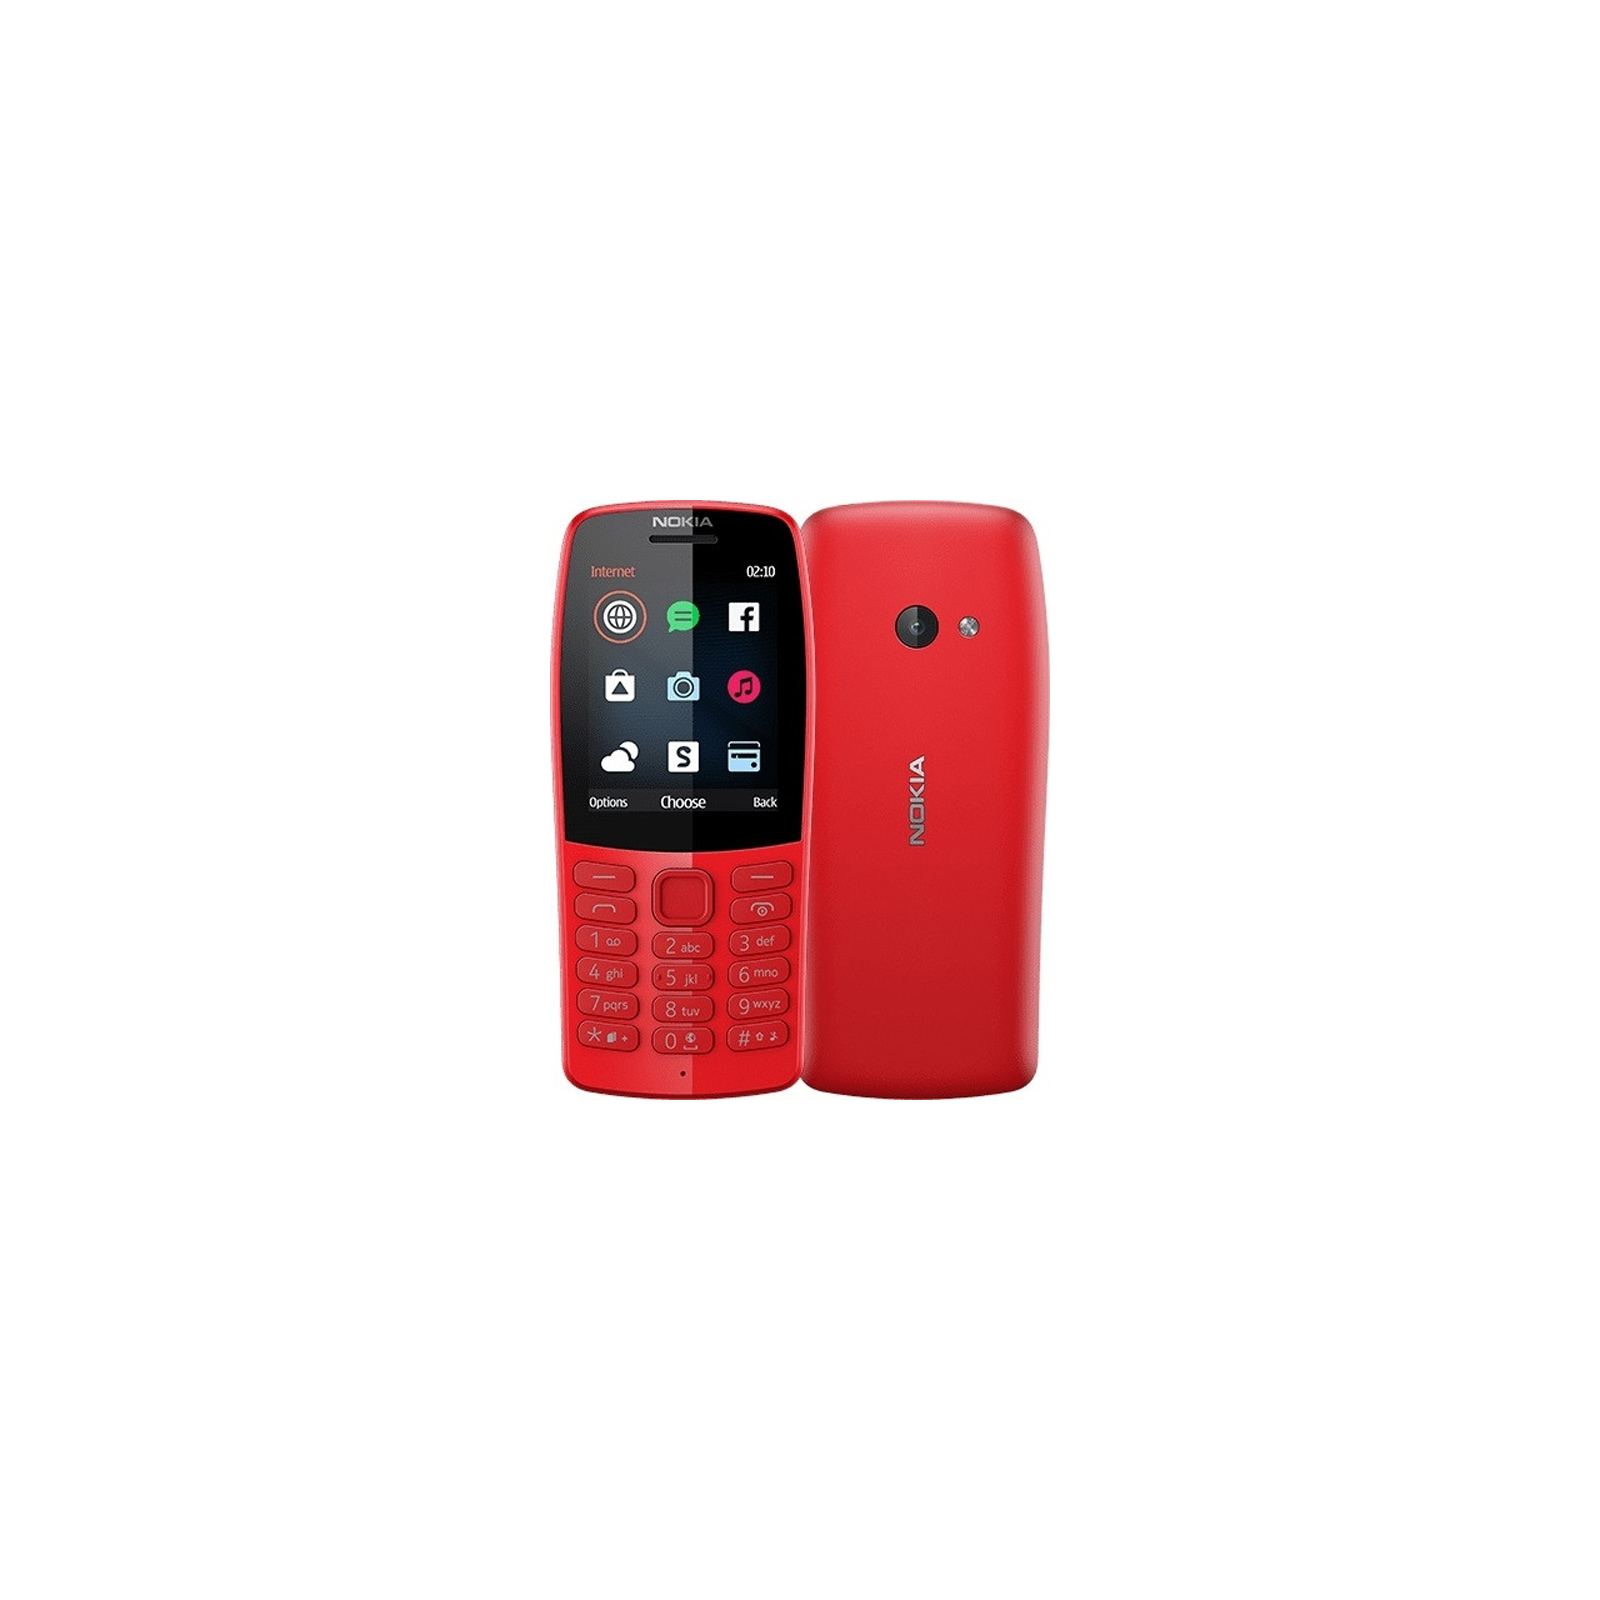 Мобильный телефон Nokia 210 DS Red (16OTRR01A01) изображение 4